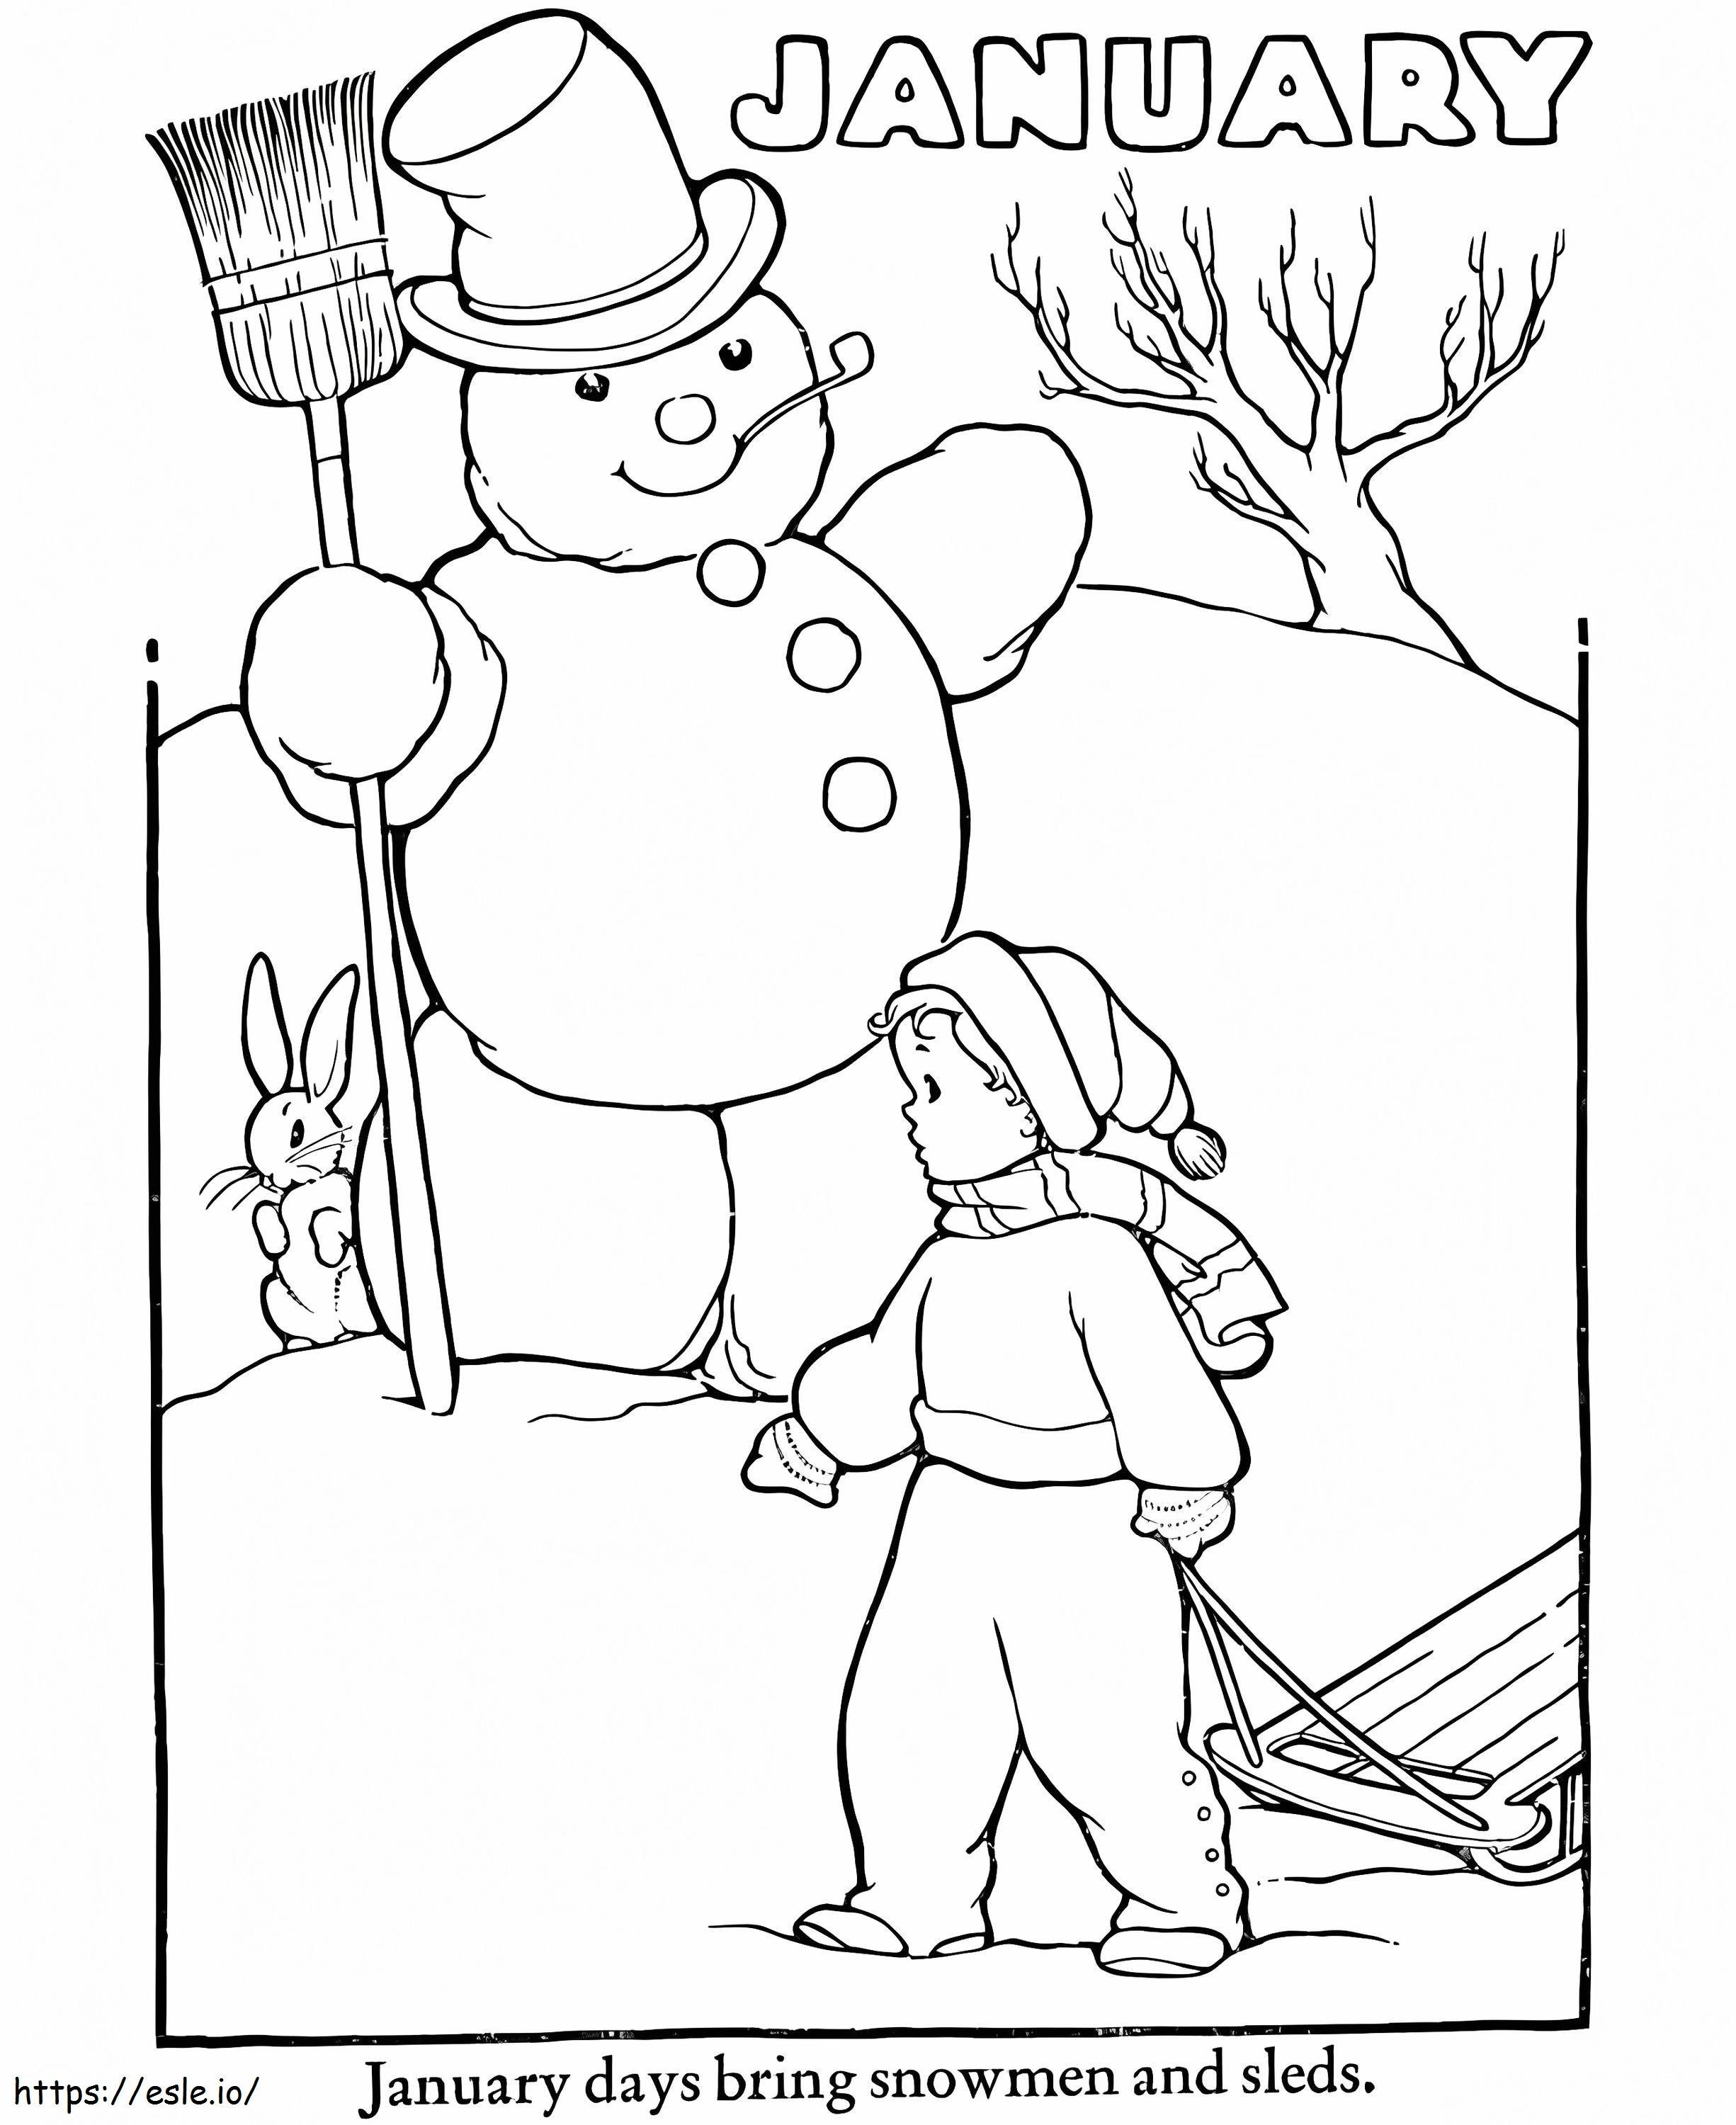 Página para colorir do boneco de neve de janeiro para colorir